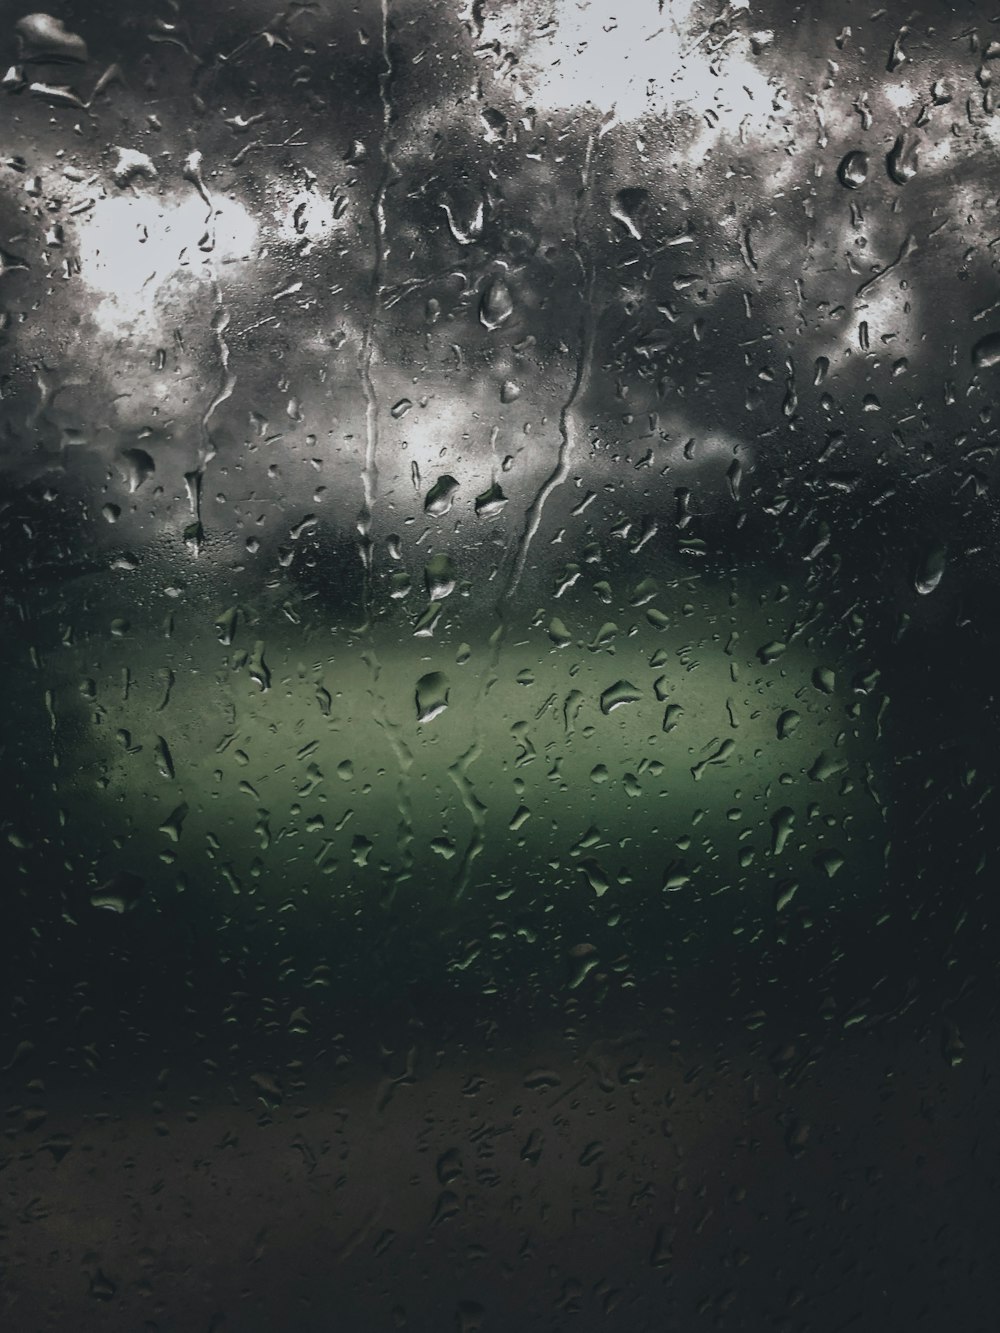 a wet window with rain drops on it